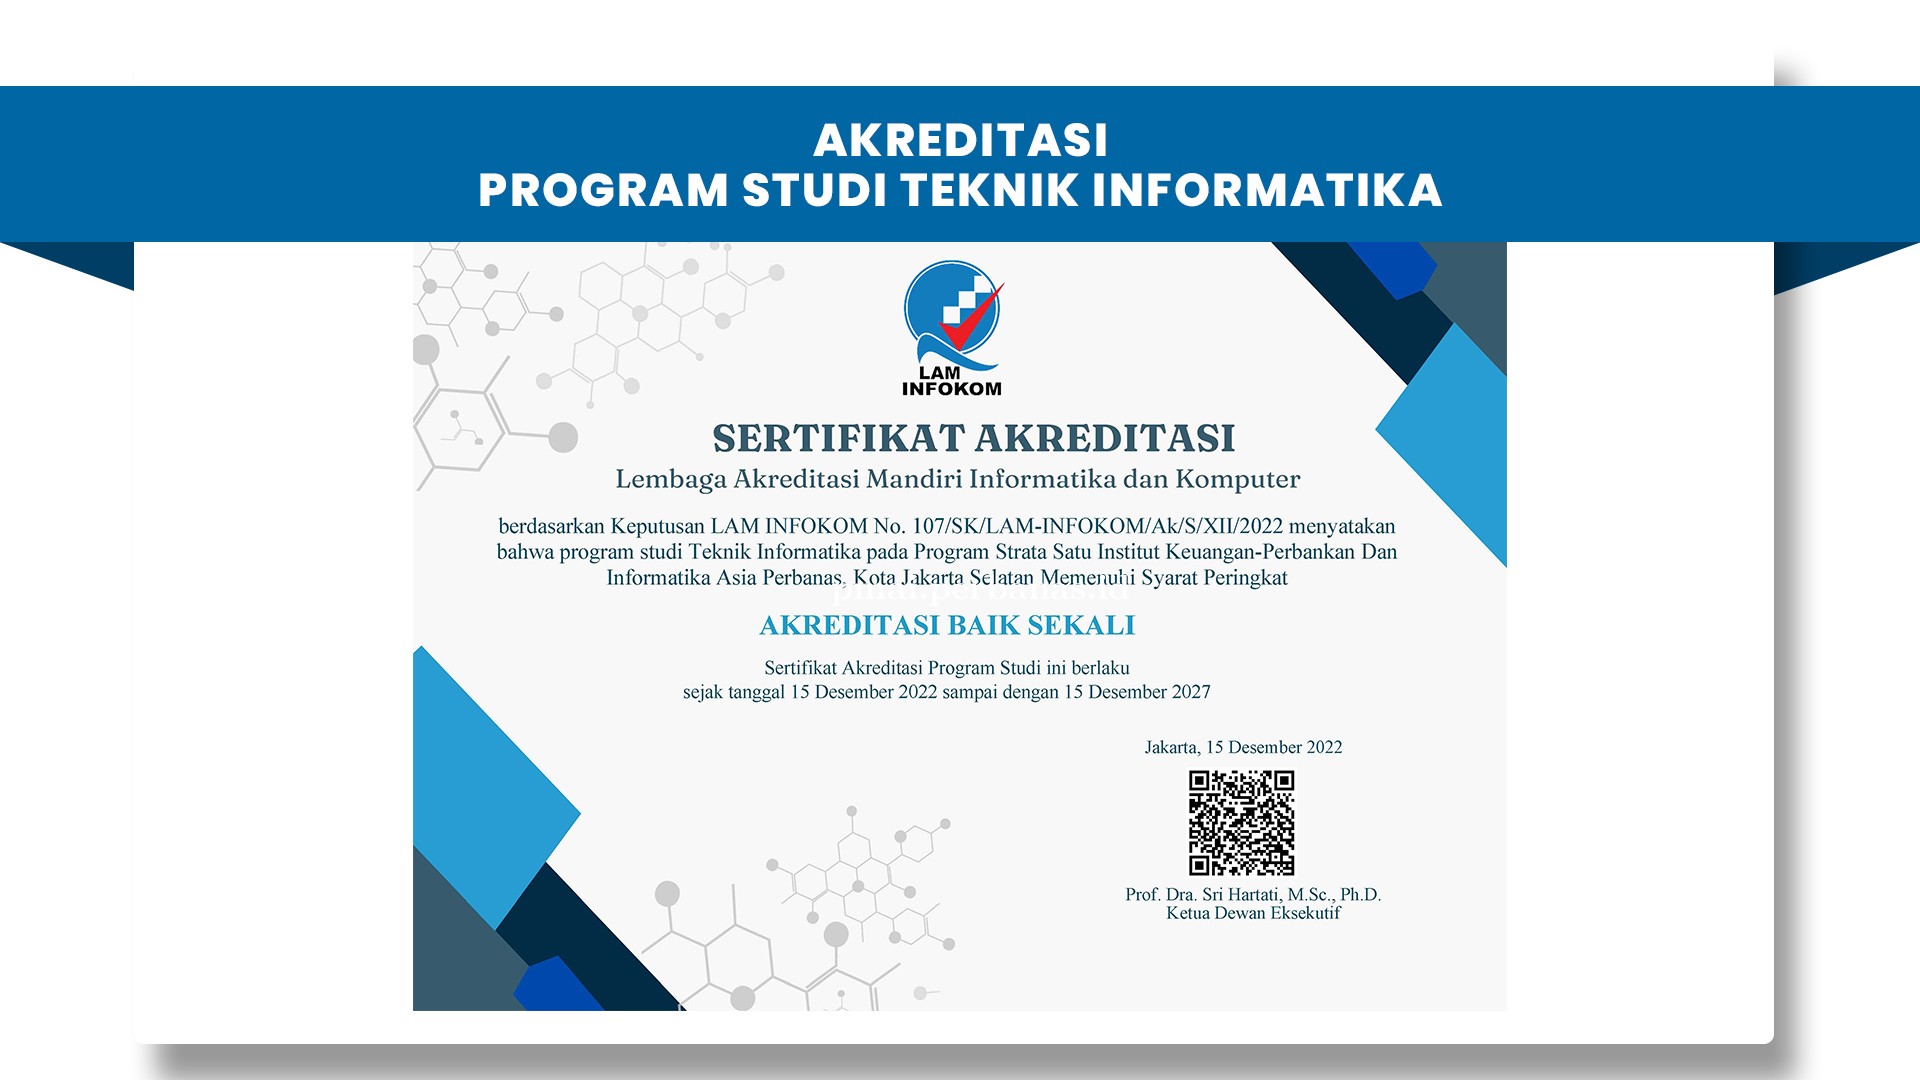 Akreditasi Program Studi Teknik Informatika